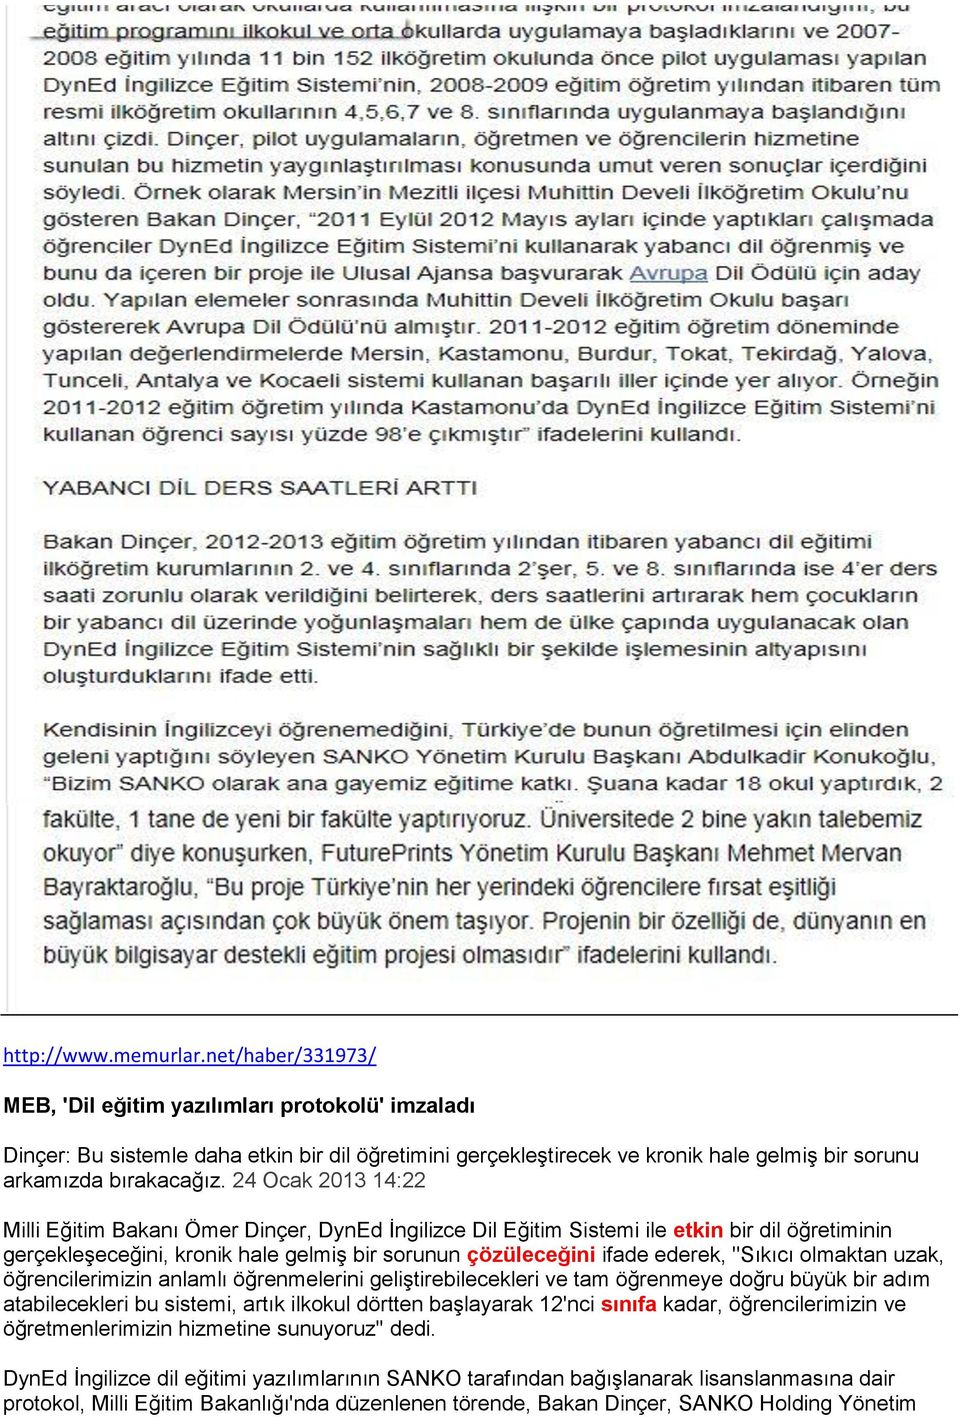 24 Ocak 2013 14:22 Milli Eğitim Bakanı Ömer Dinçer, DynEd İngilizce Dil Eğitim Sistemi ile etkin bir dil öğretiminin gerçekleşeceğini, kronik hale gelmiş bir sorunun çözüleceğini ifade ederek,